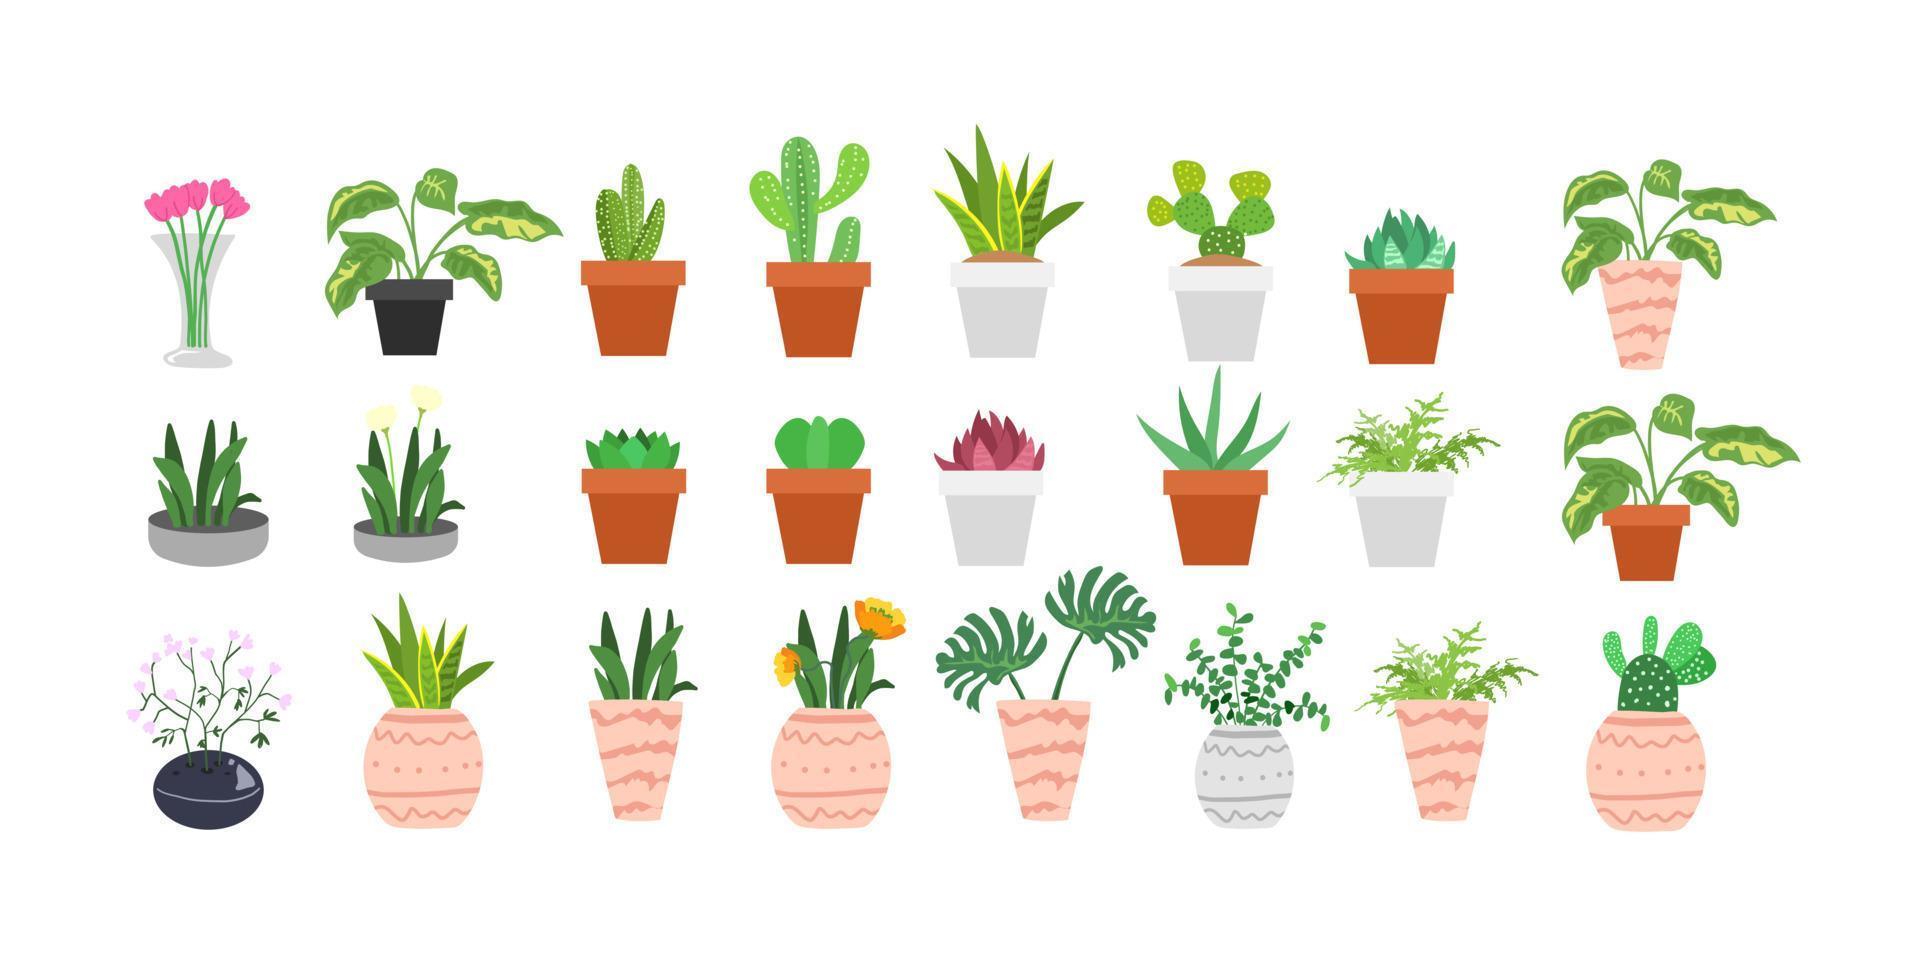 Kaktus und Sukkulenten eingestellt. süßer grüner Kaktus in Blumentöpfen Vektor handgezeichnet isoliert. Illustration